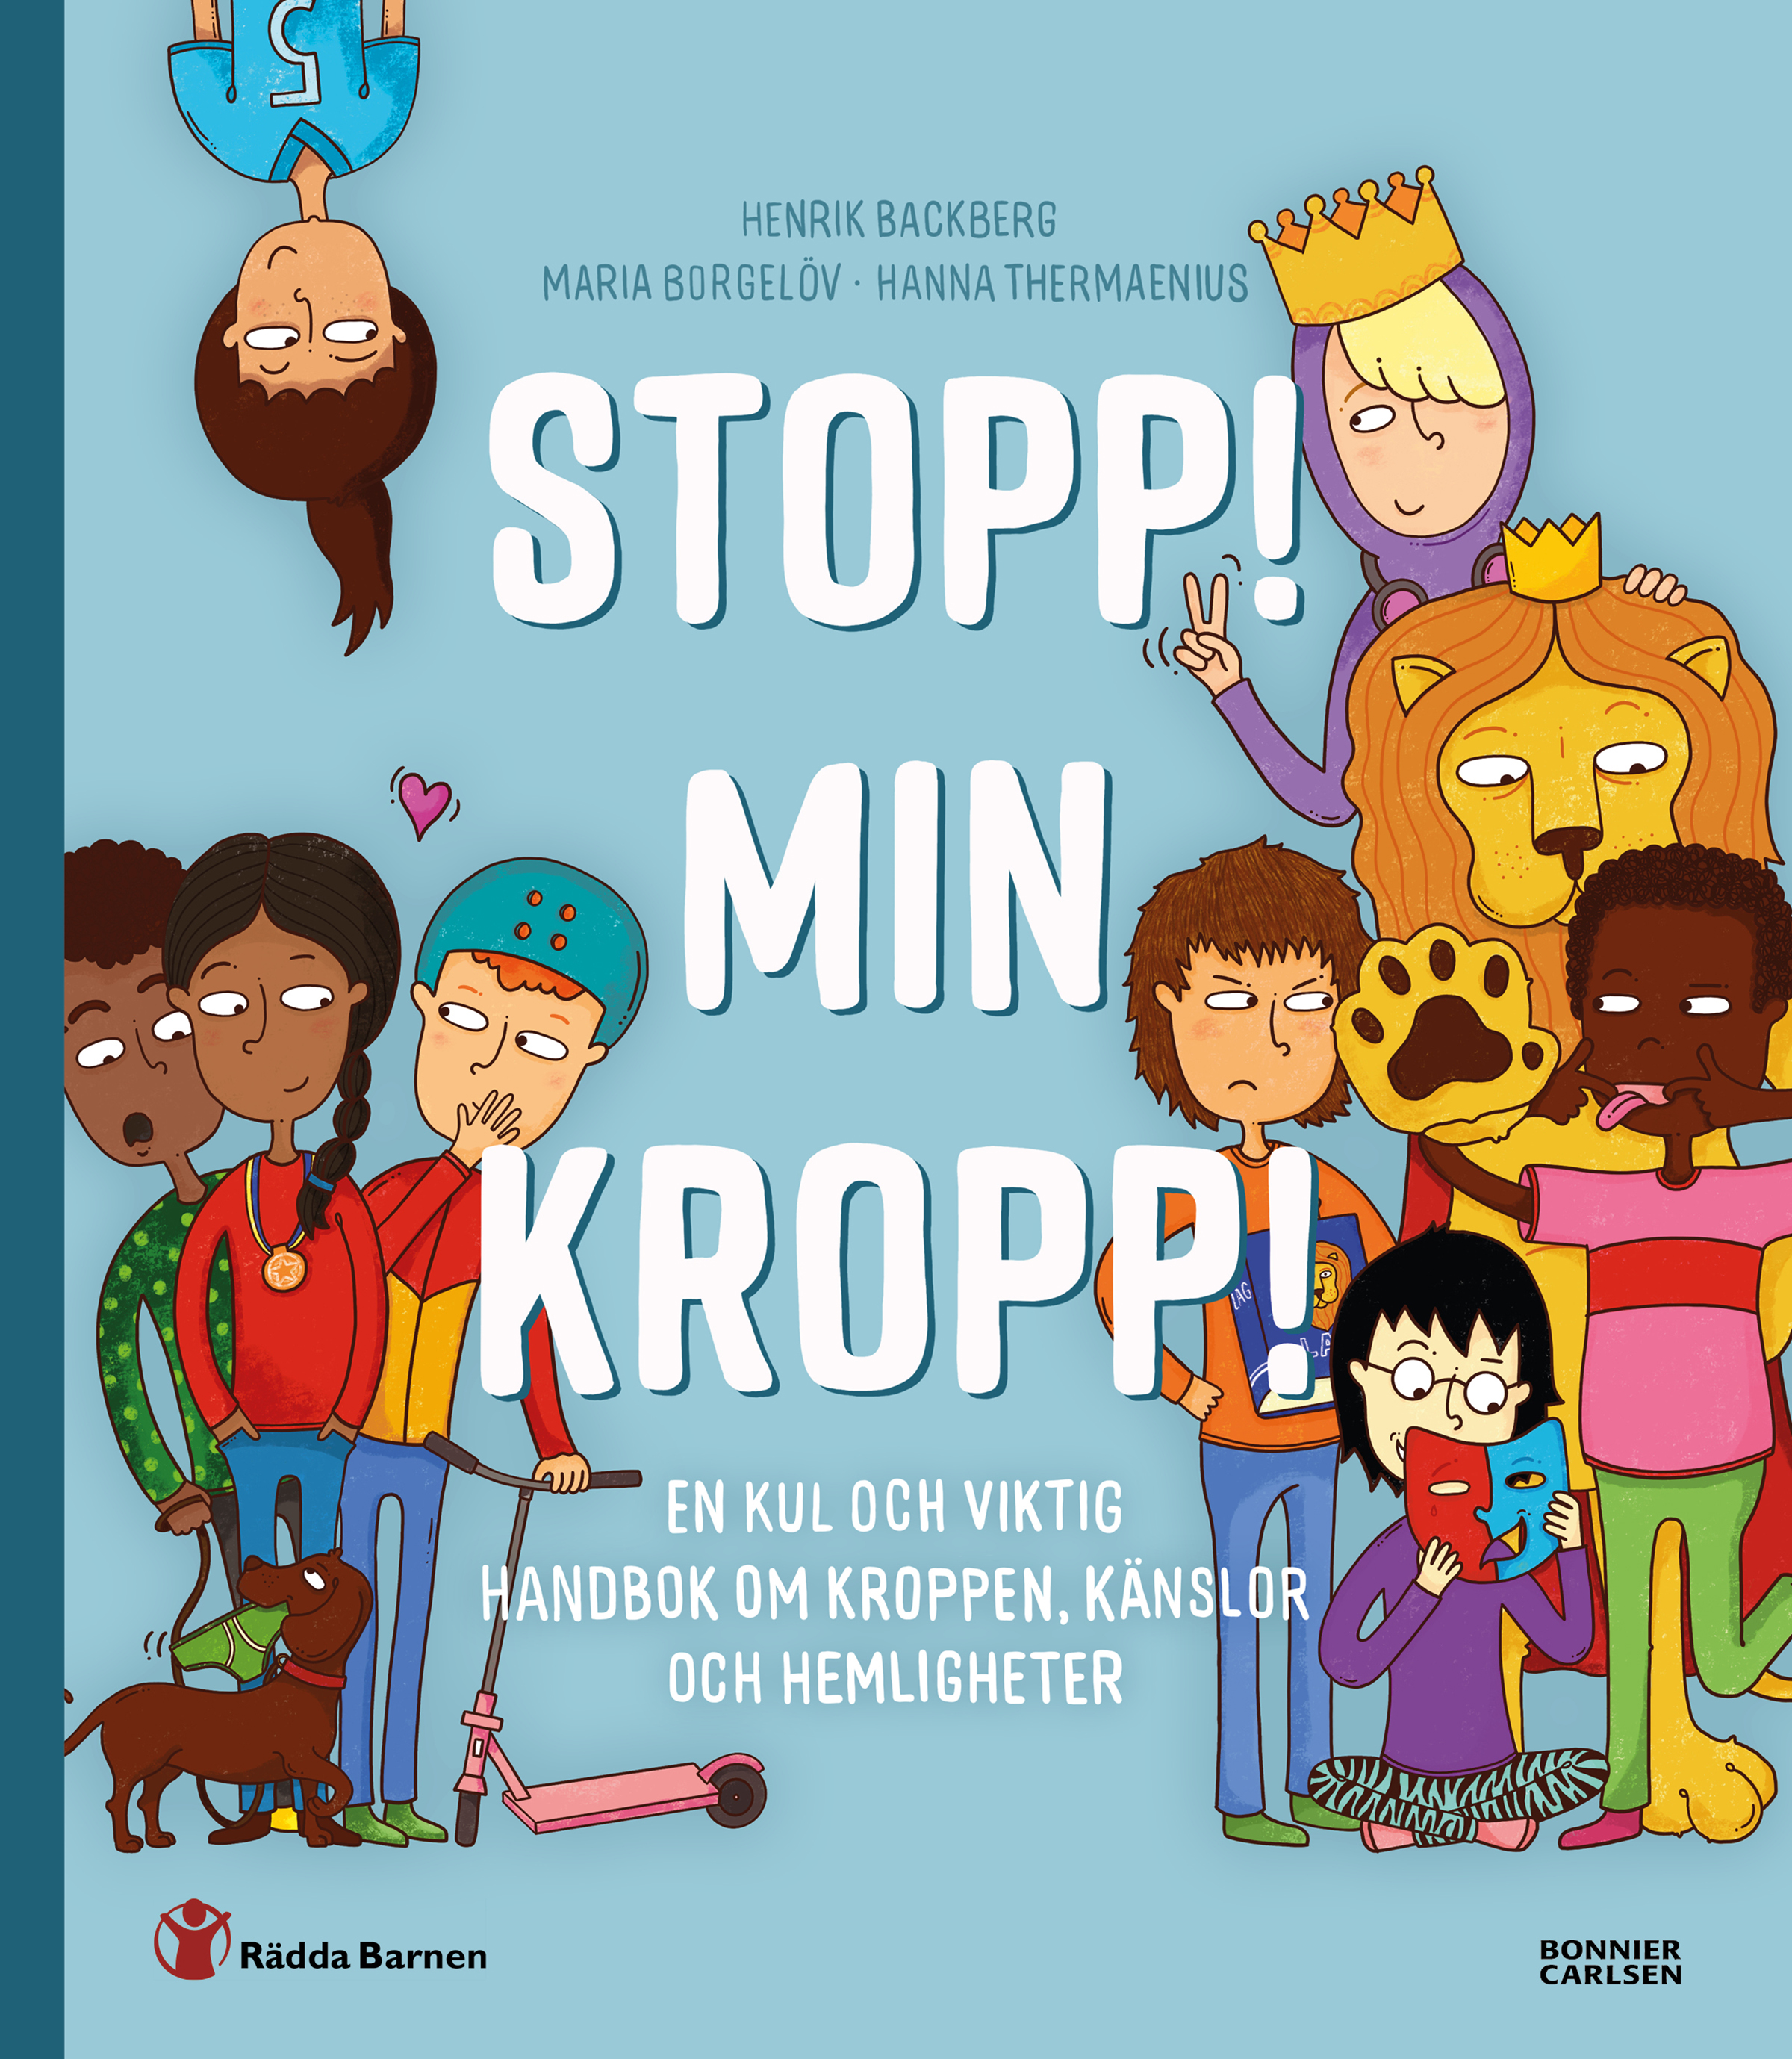 Omslagsbild till boken Stopp! Min kropp! Illustrationen föreställer barn, ett lejon och en tax.